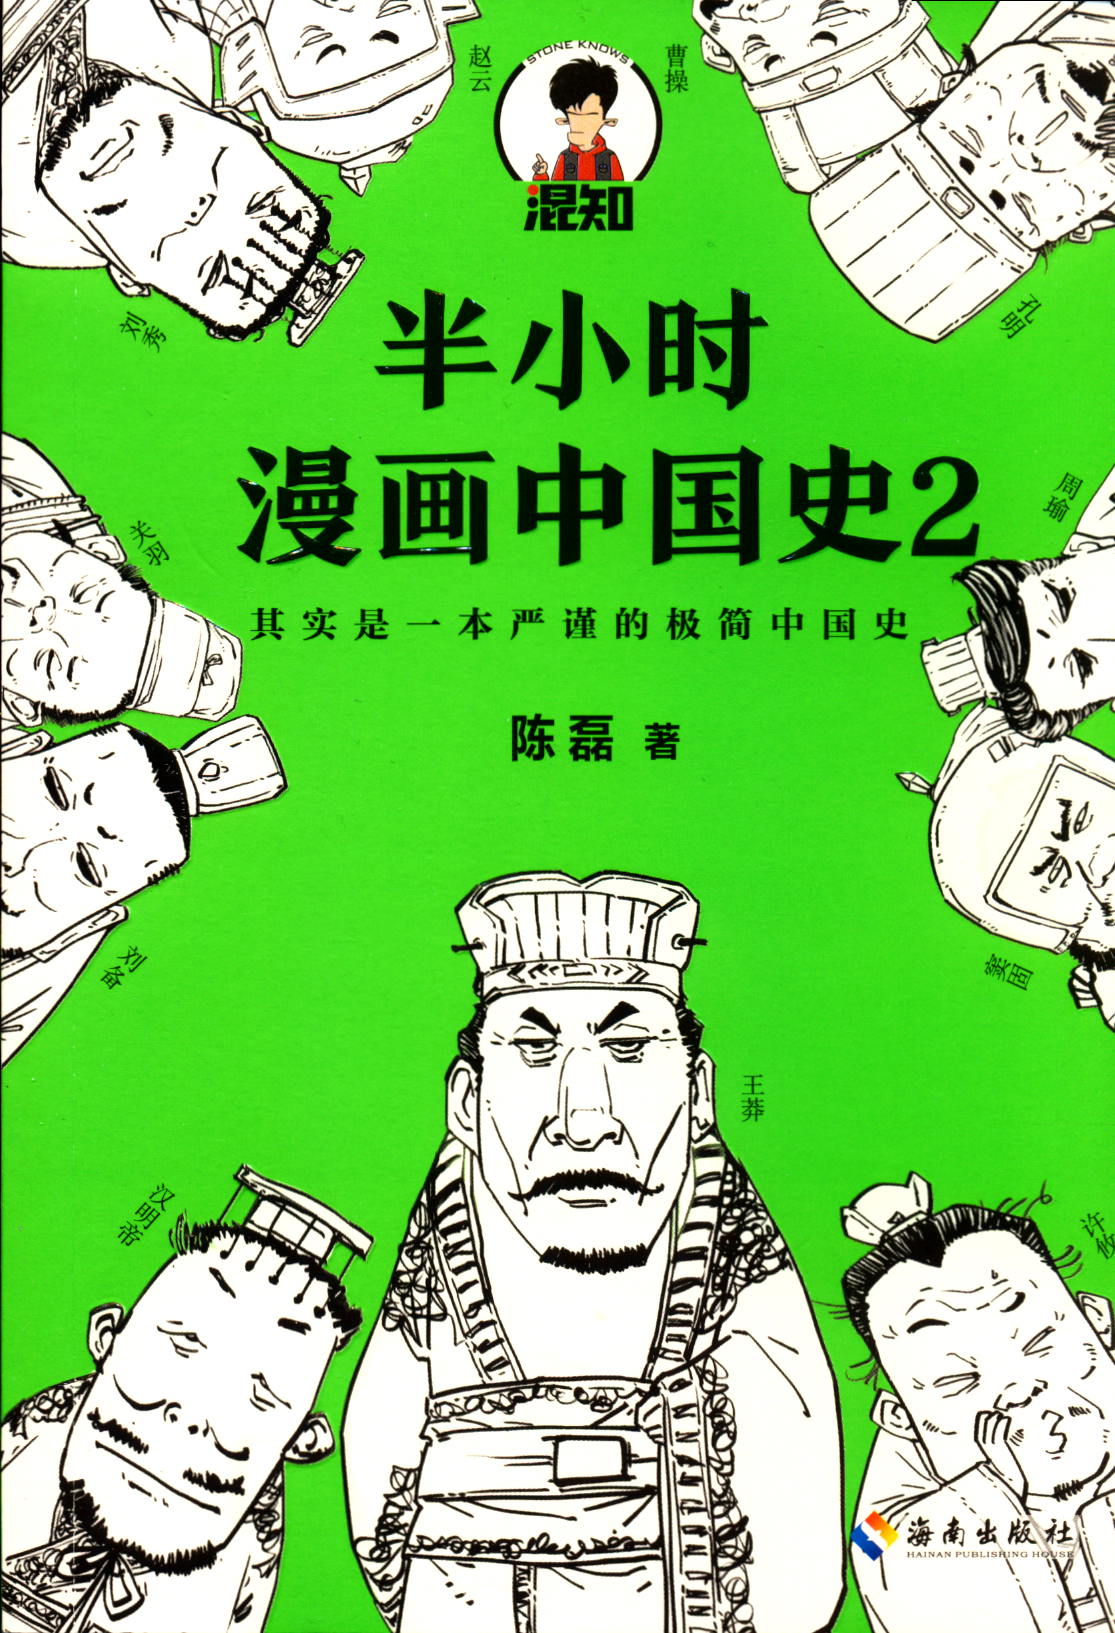 半小时漫画中国史2中国历史通俗读物少儿青少年读物